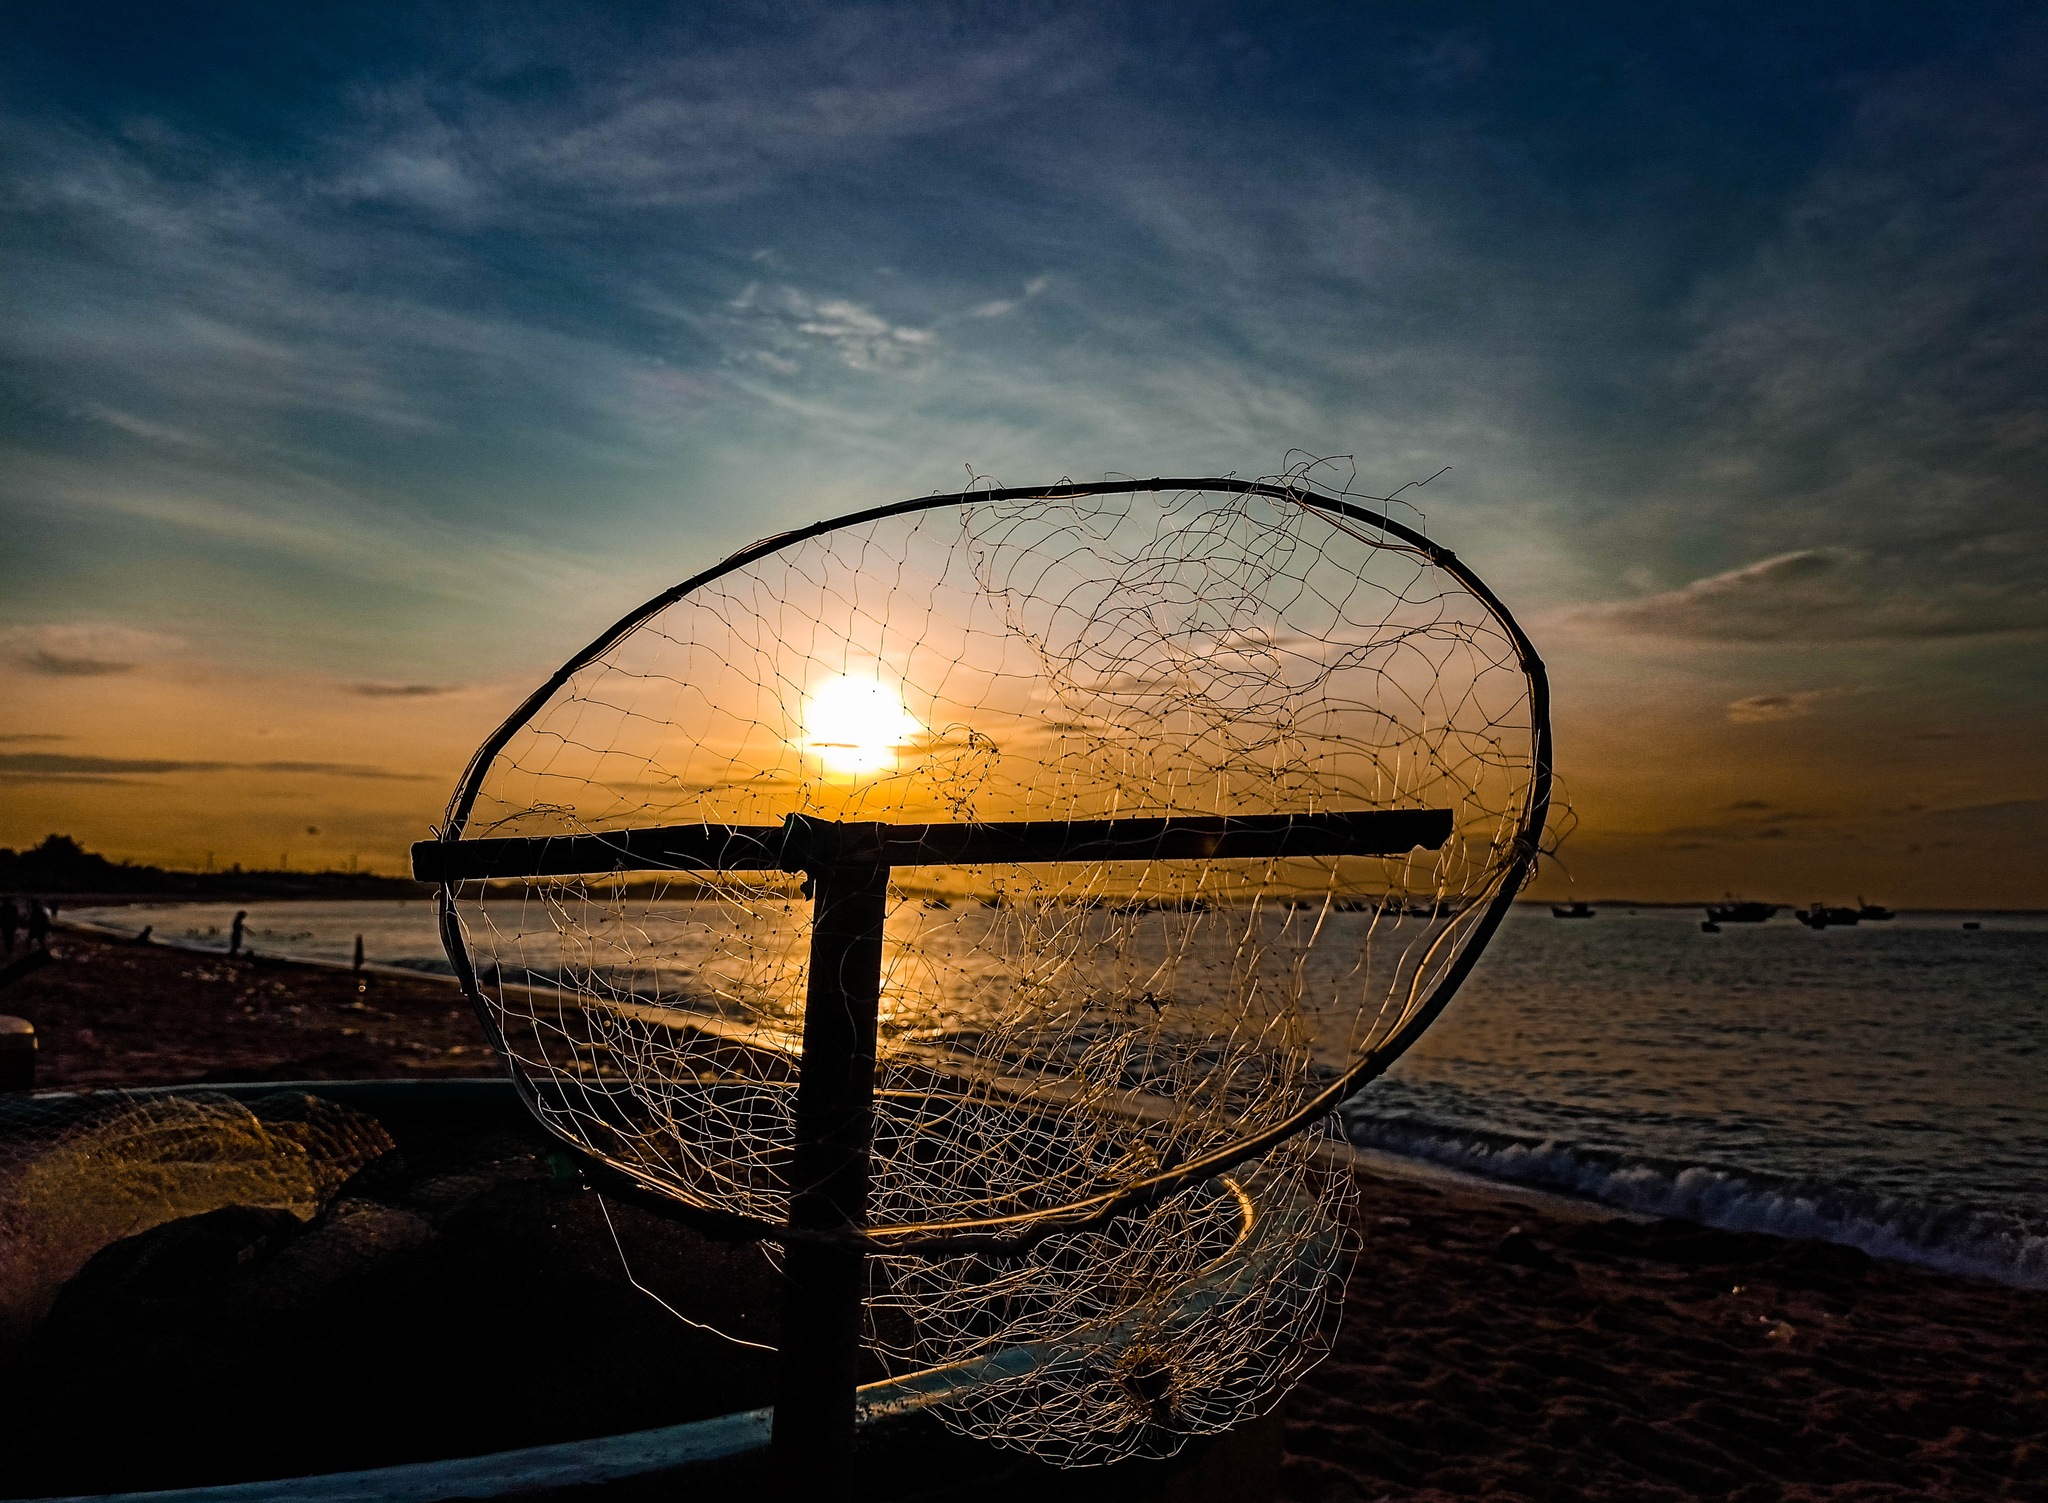 Buổi sáng không có ai thì mặt trời vẫn mọc và cái vợt lưới cước chính ra đang ở ngoài biển đánh...